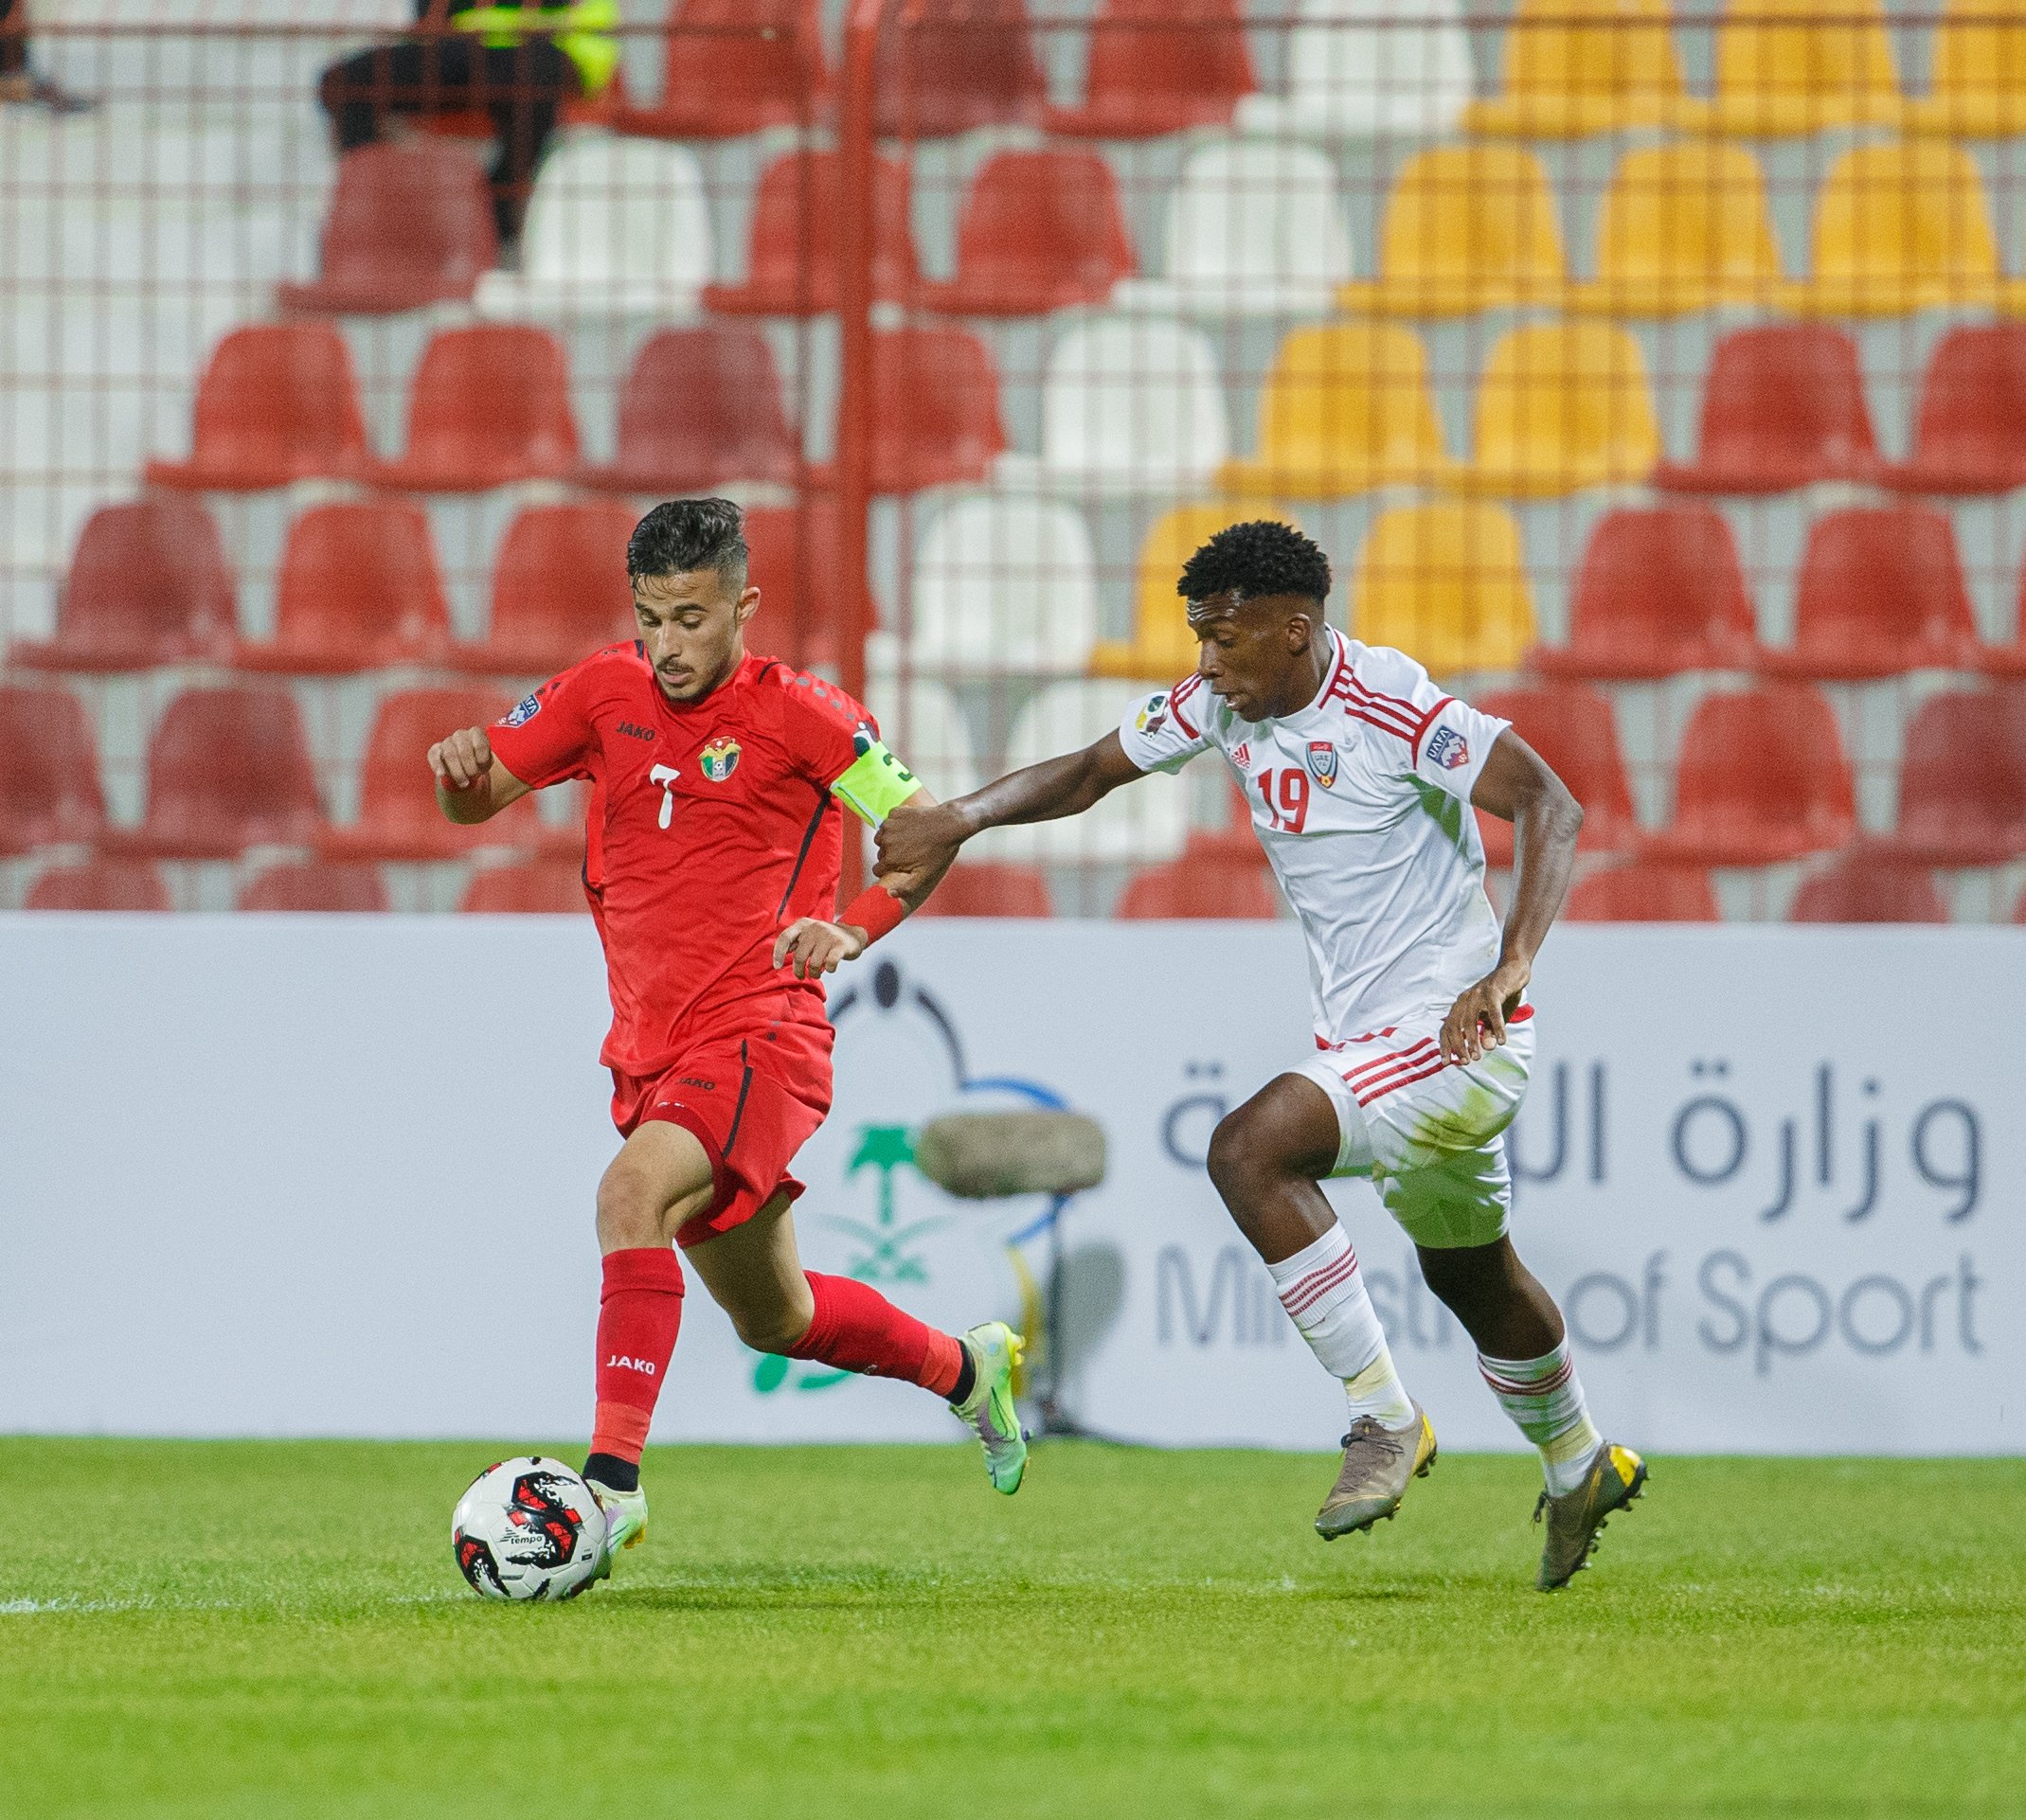 موعد مباراة اليمن والأردن كأس العرب للشباب 2022 والقنوات المفتوحة الناقلة